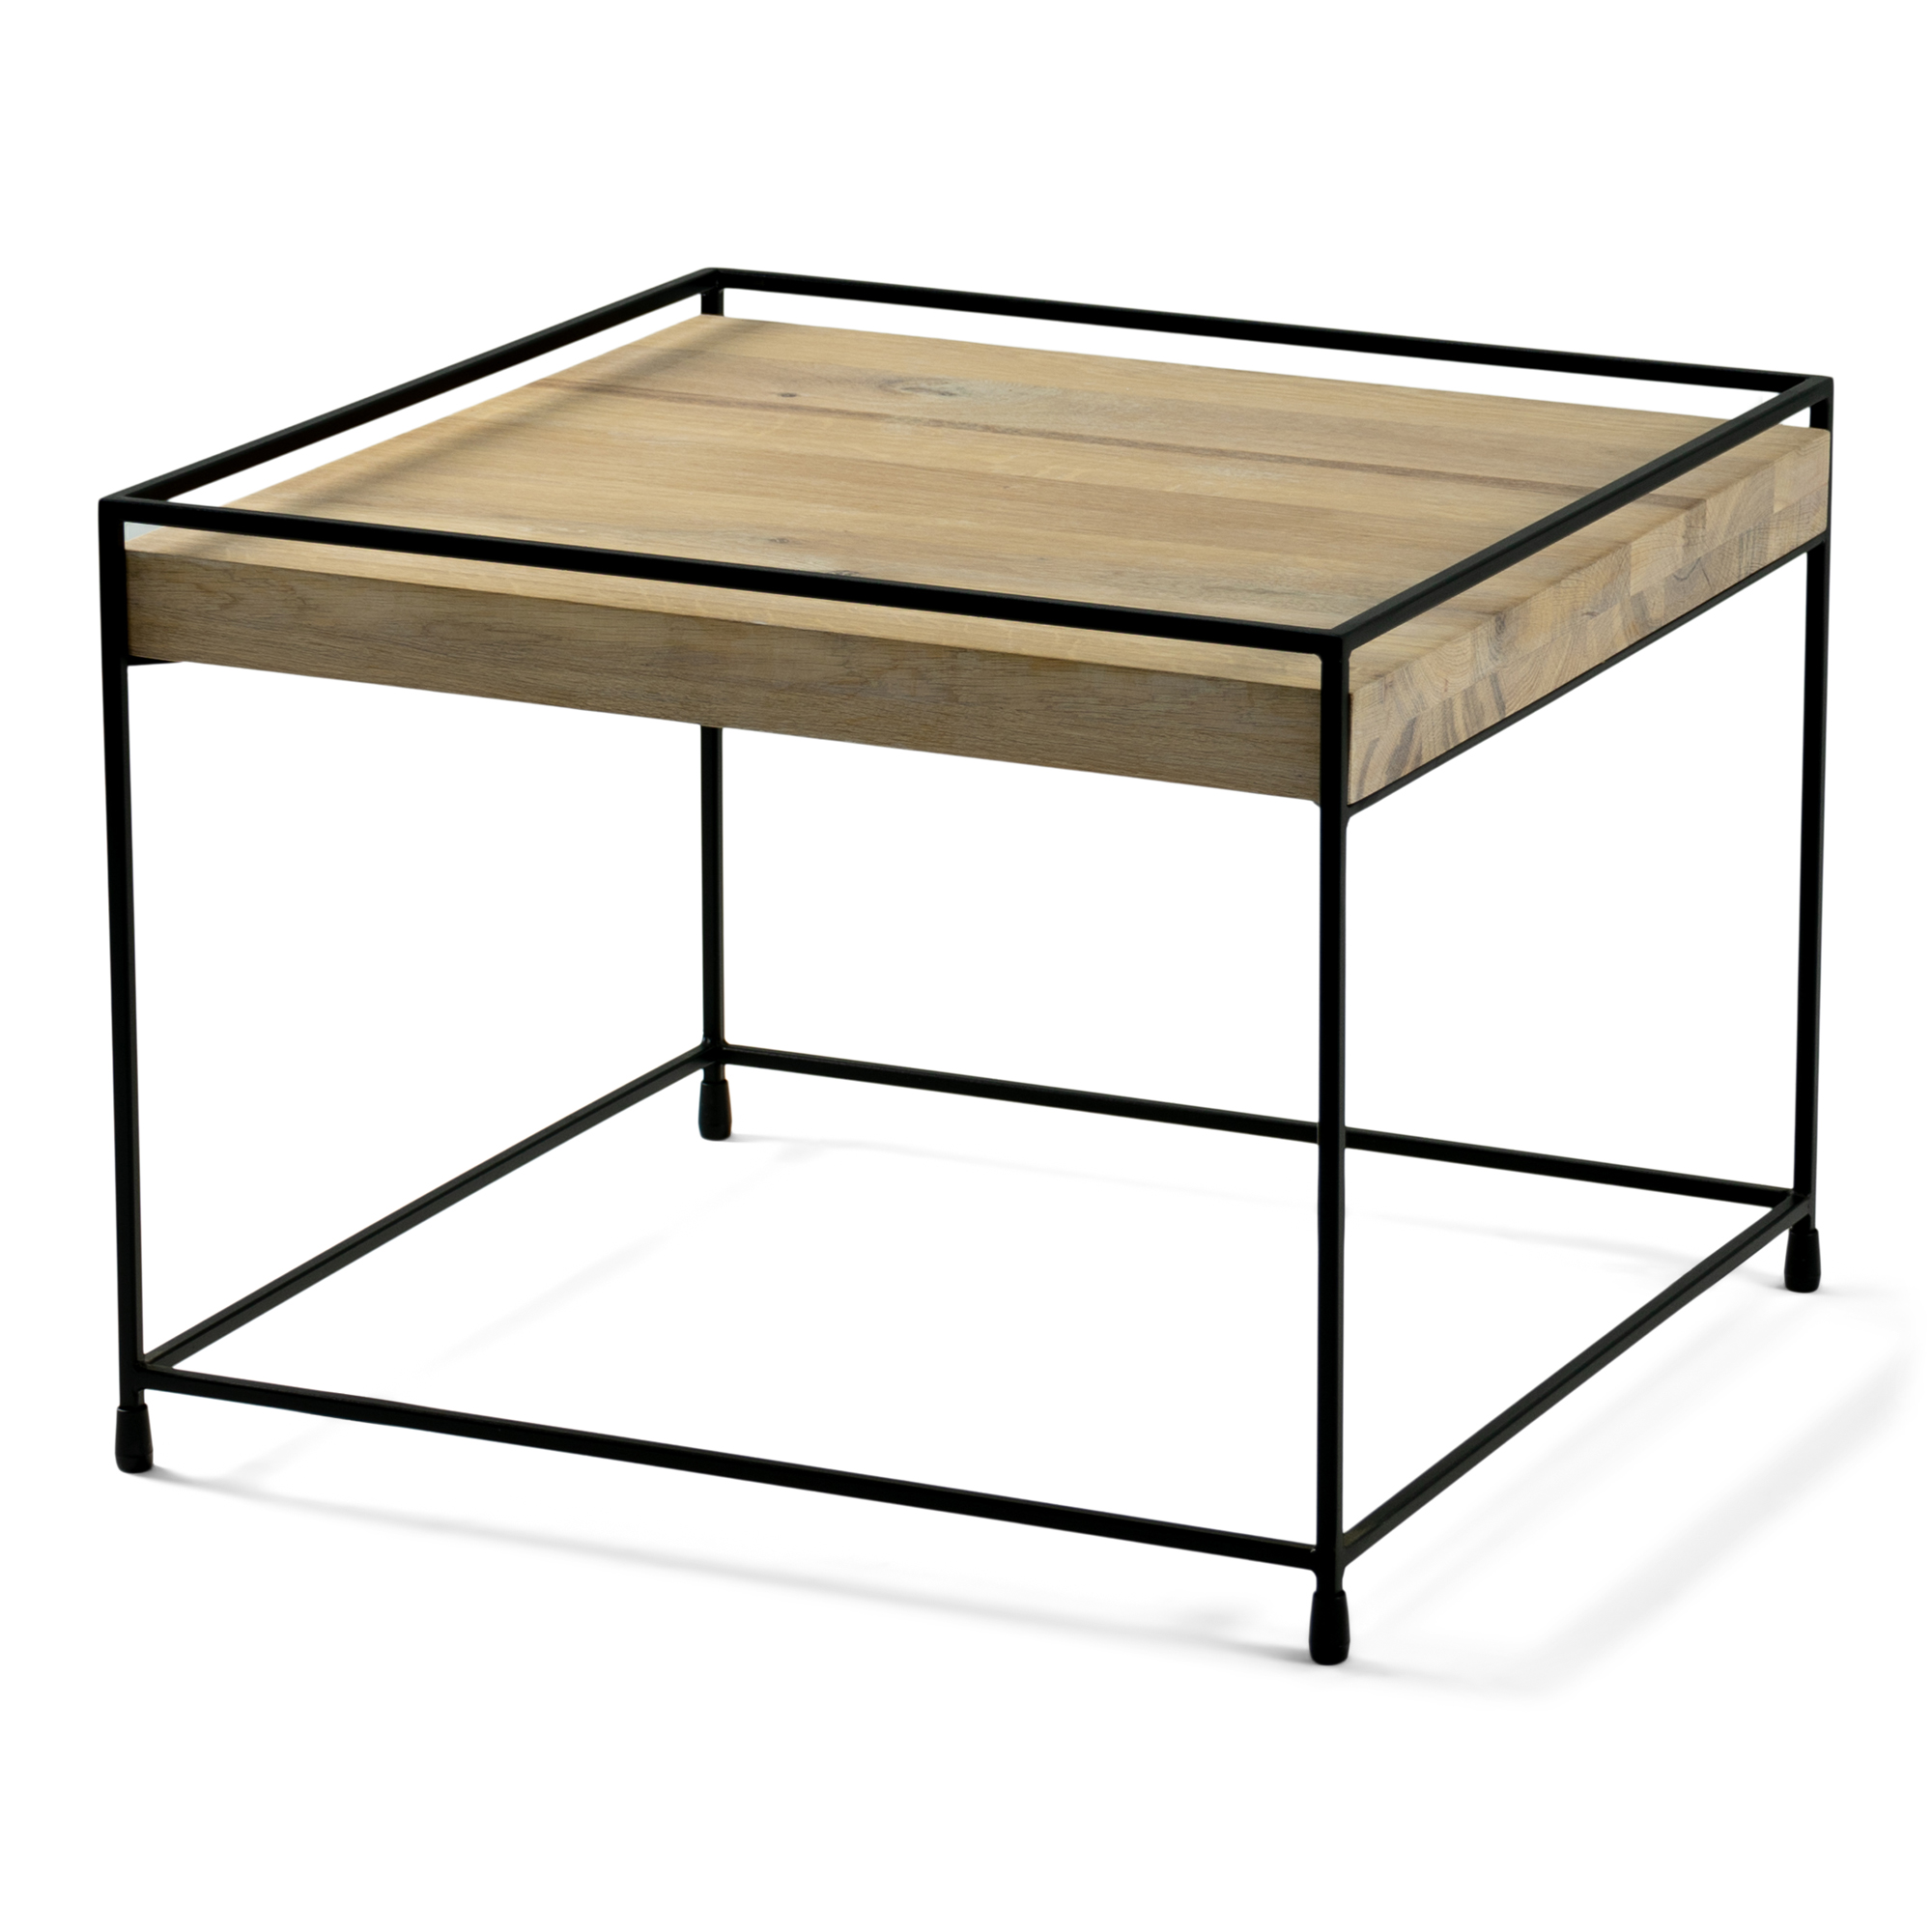 TORNA DESIGN Thin wood sofabord, kvadratisk - bianco eg og sort stål (60x60)